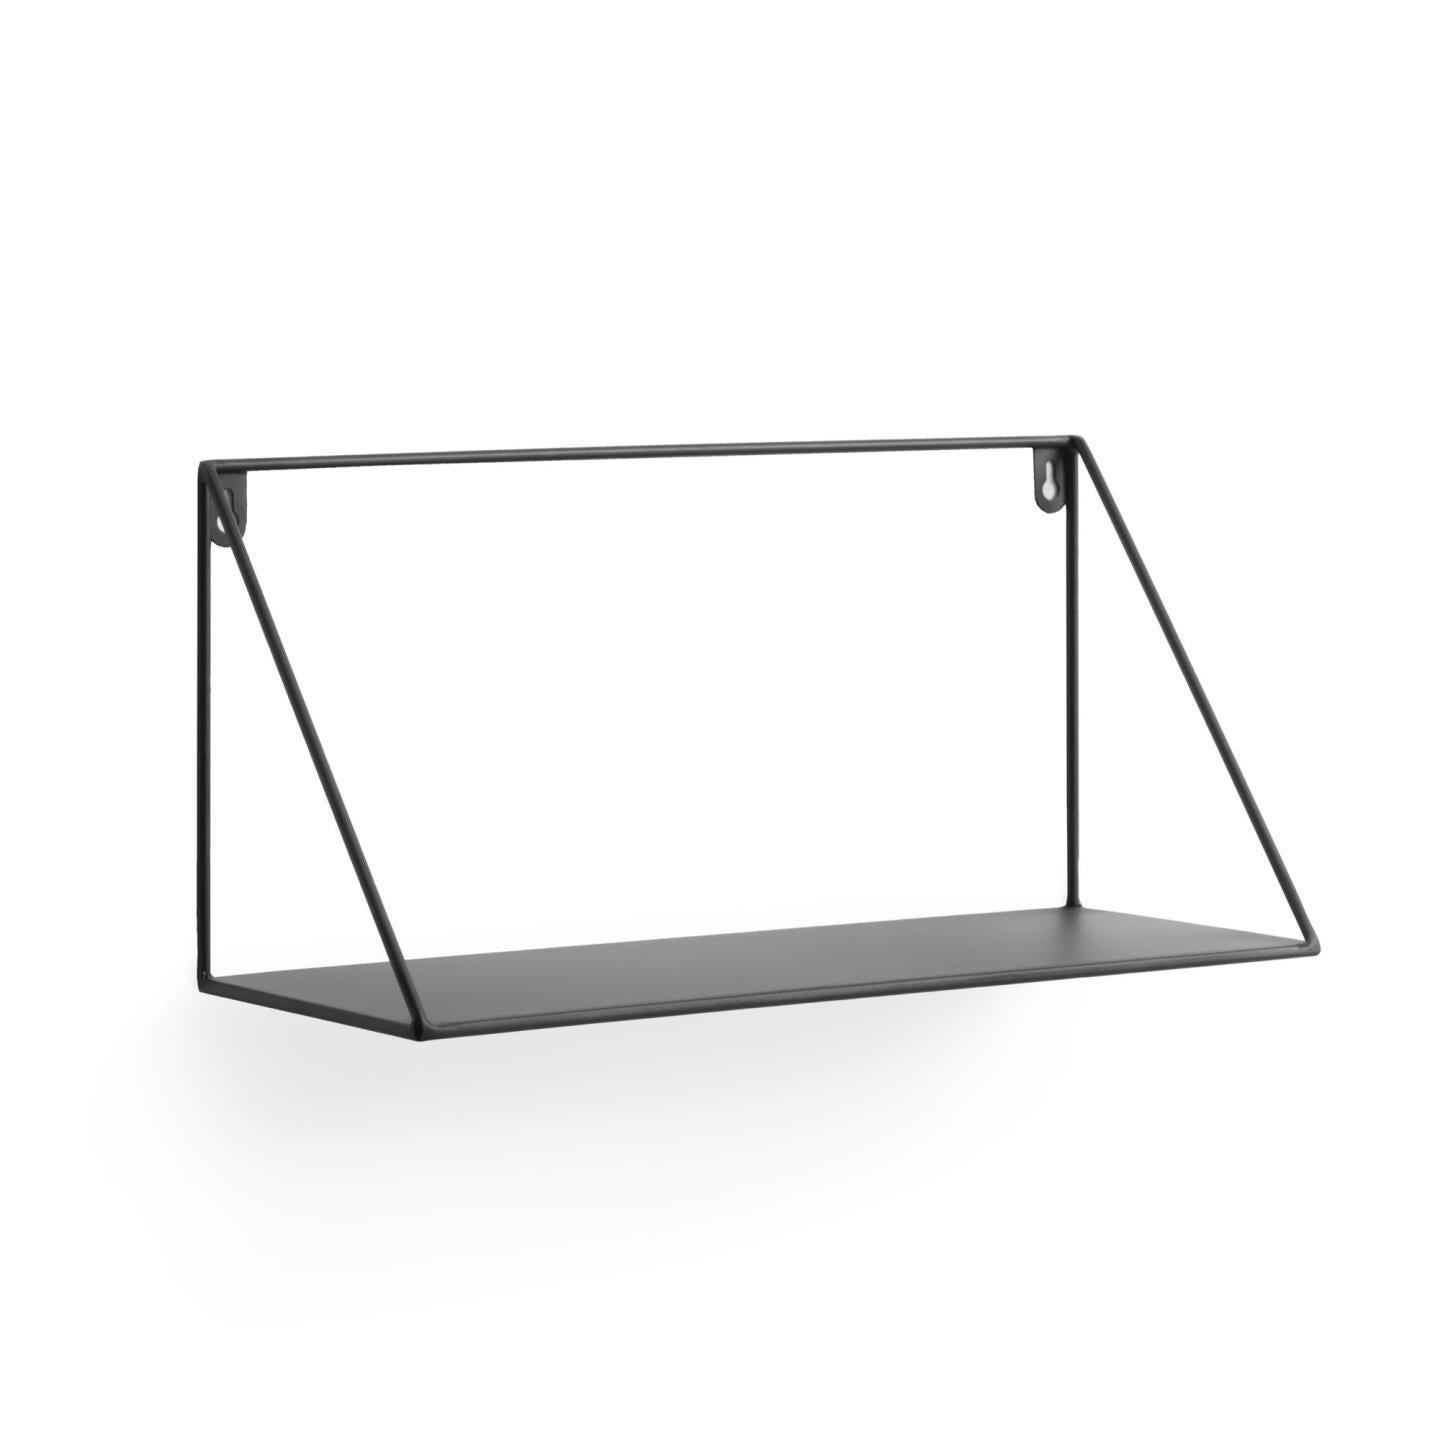 Teg háromszögletű polc acélból, fekete kivitelben 40 x 20 cm